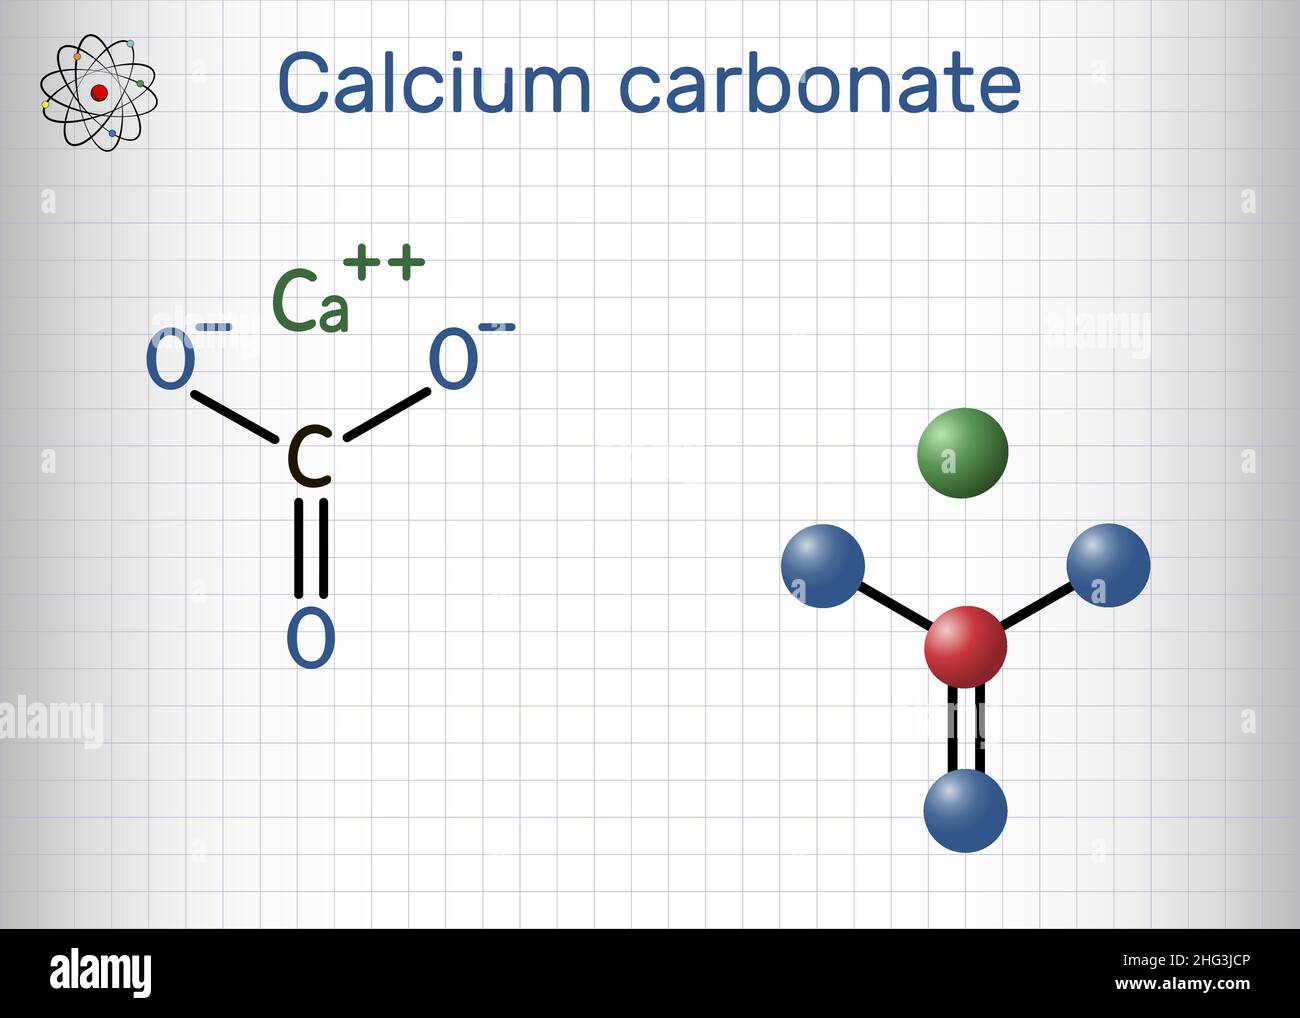 Calciumcarbonat-Molekül. Es ist ionische Verbindung, Kohlensalz von Calcium CaCO3, Calciumsalz, Lebensmittelzusatz E170. Strukturformel, Molekülmodell Stock Vektor